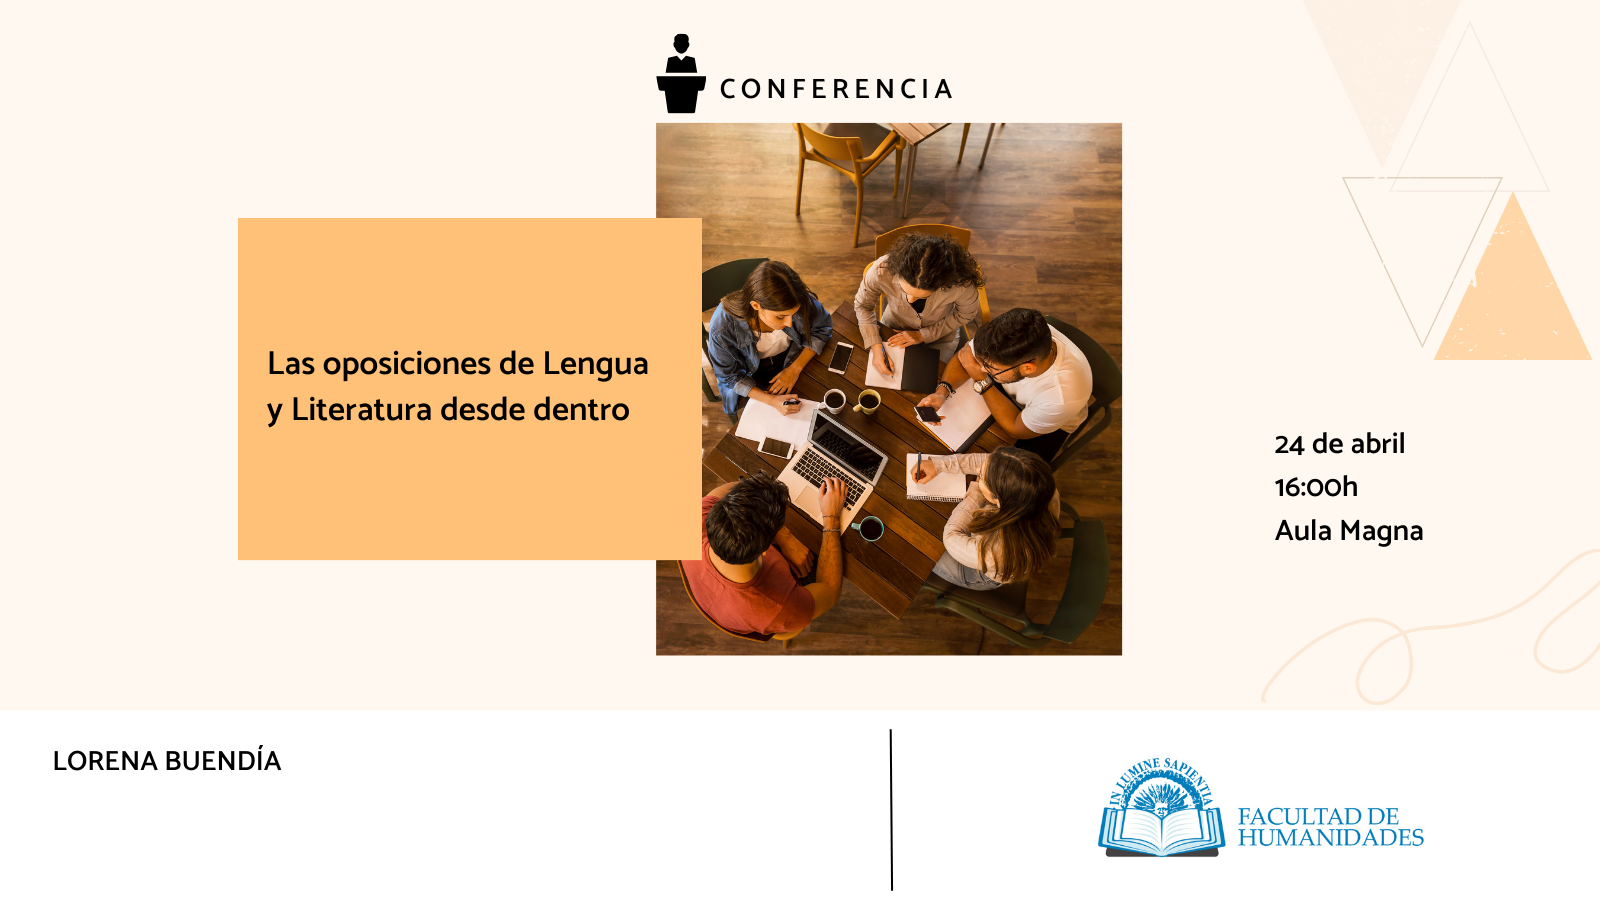 La Facultad de Humanidades y Javier Fornieles organizan la conferencia: «Las oposiciones de Lengua y Literatura desde dentro».
